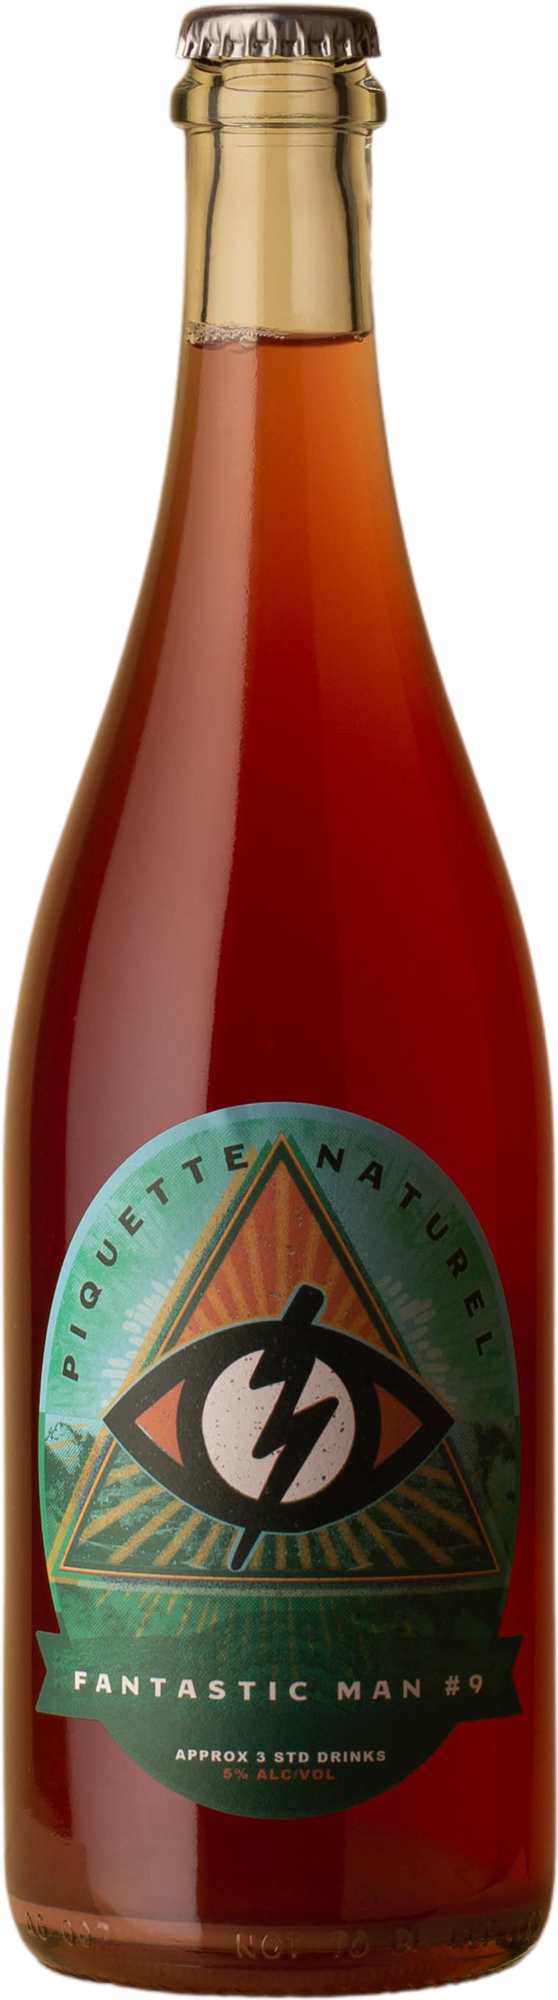 BK Wines - Piquette Naturel Fantastic Man Grüner Veltliner / Pinot Gris 2020 Sparkling Wine